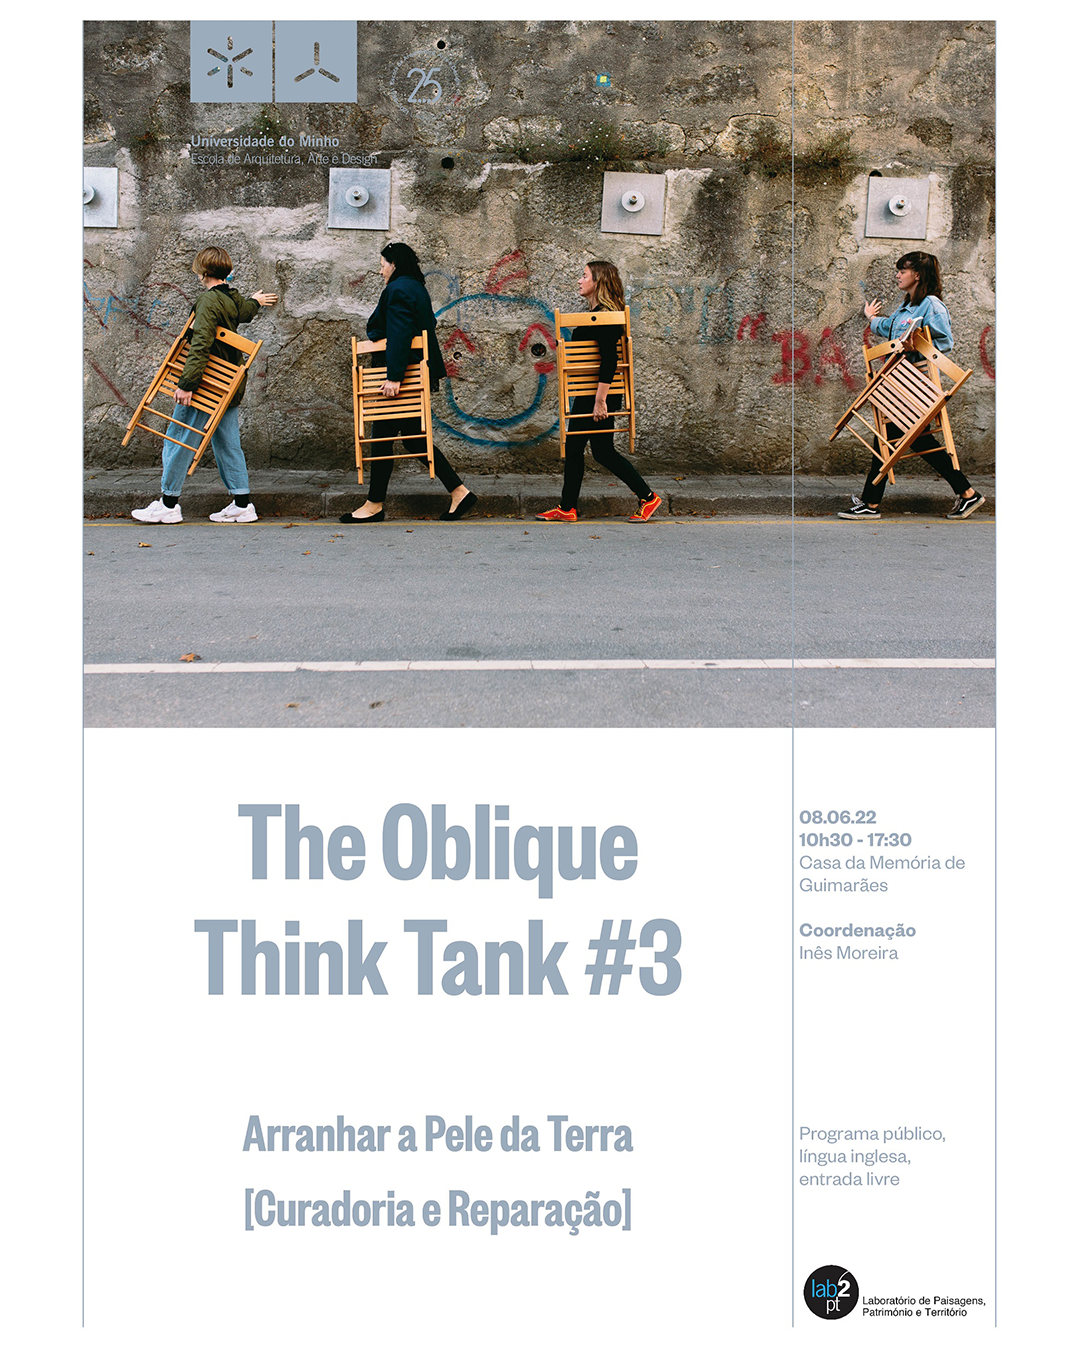 The Oblique Think Tank #3 | Arranhar a Pele da Terra [Curadoria e Reparação] image